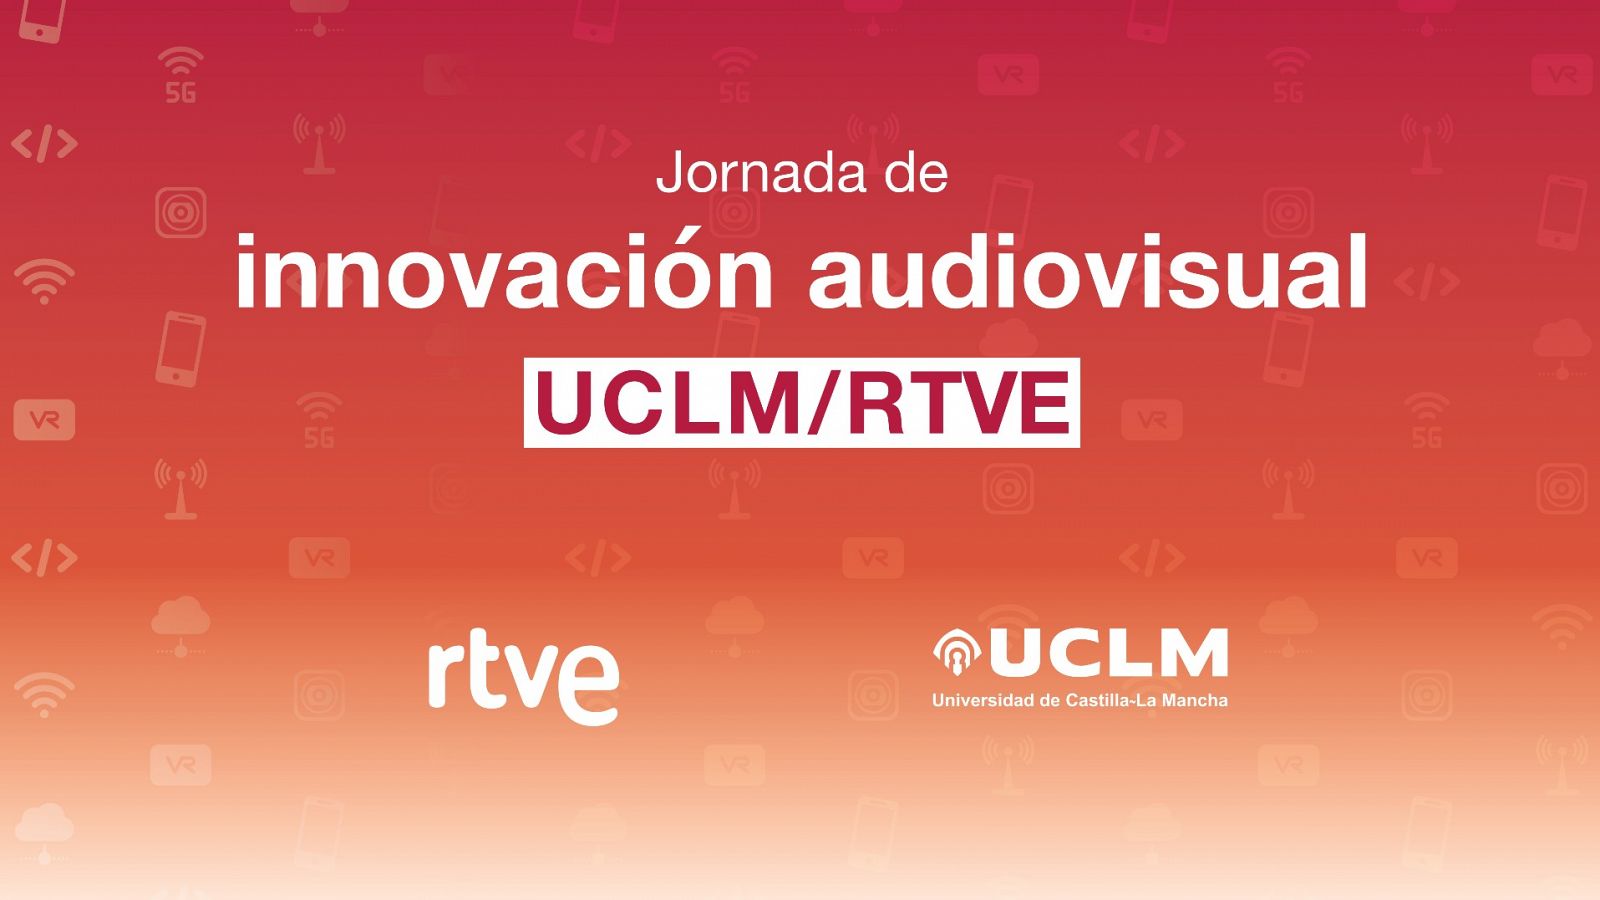 Jornada de innovación audiovisual UCLM / RTVE